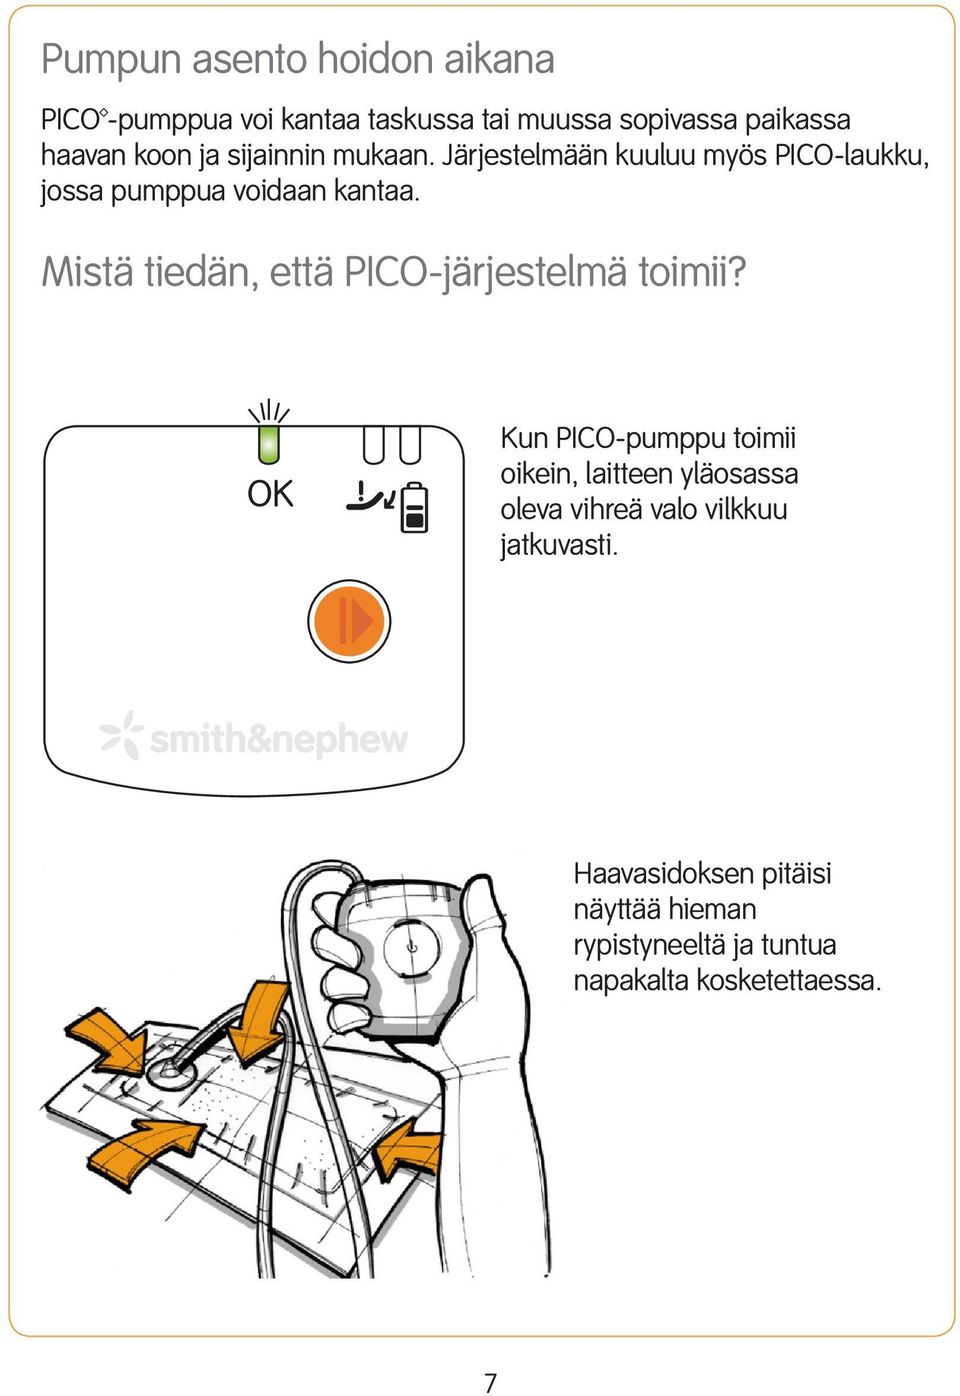 Mistä tiedän, että PICO-järjestelmä toimii?